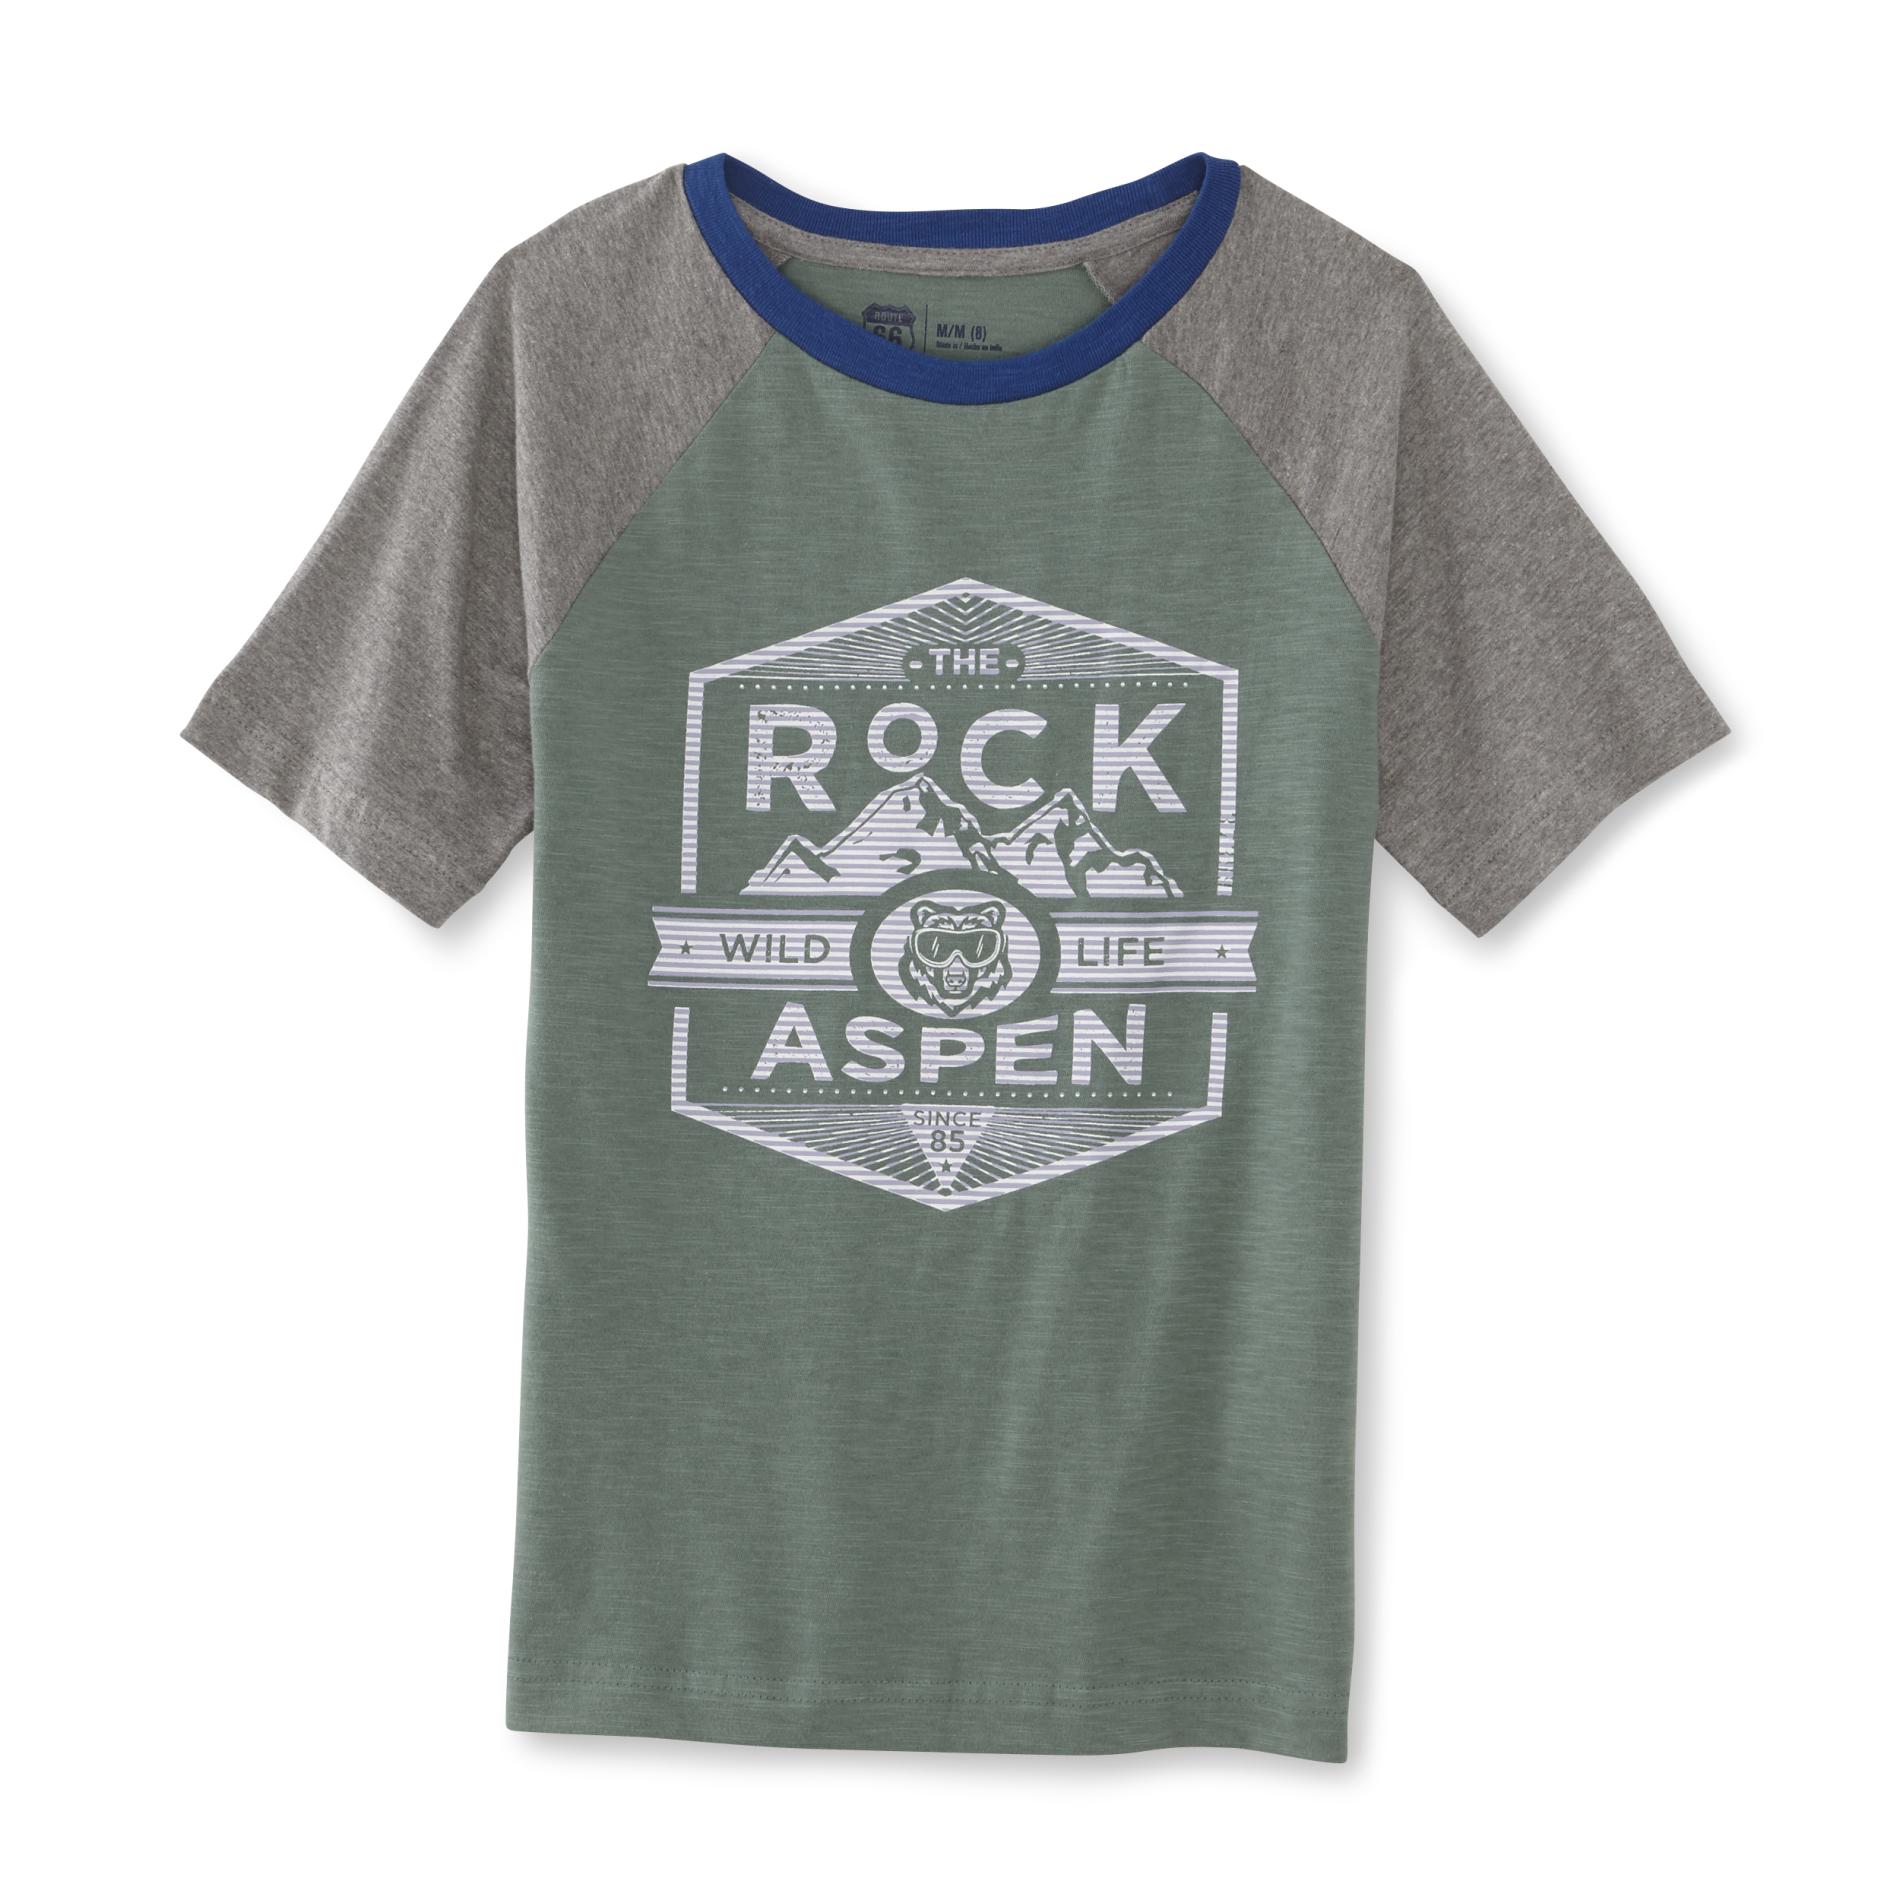 Route 66 Boys' Graphic T-Shirt - Rock Aspen